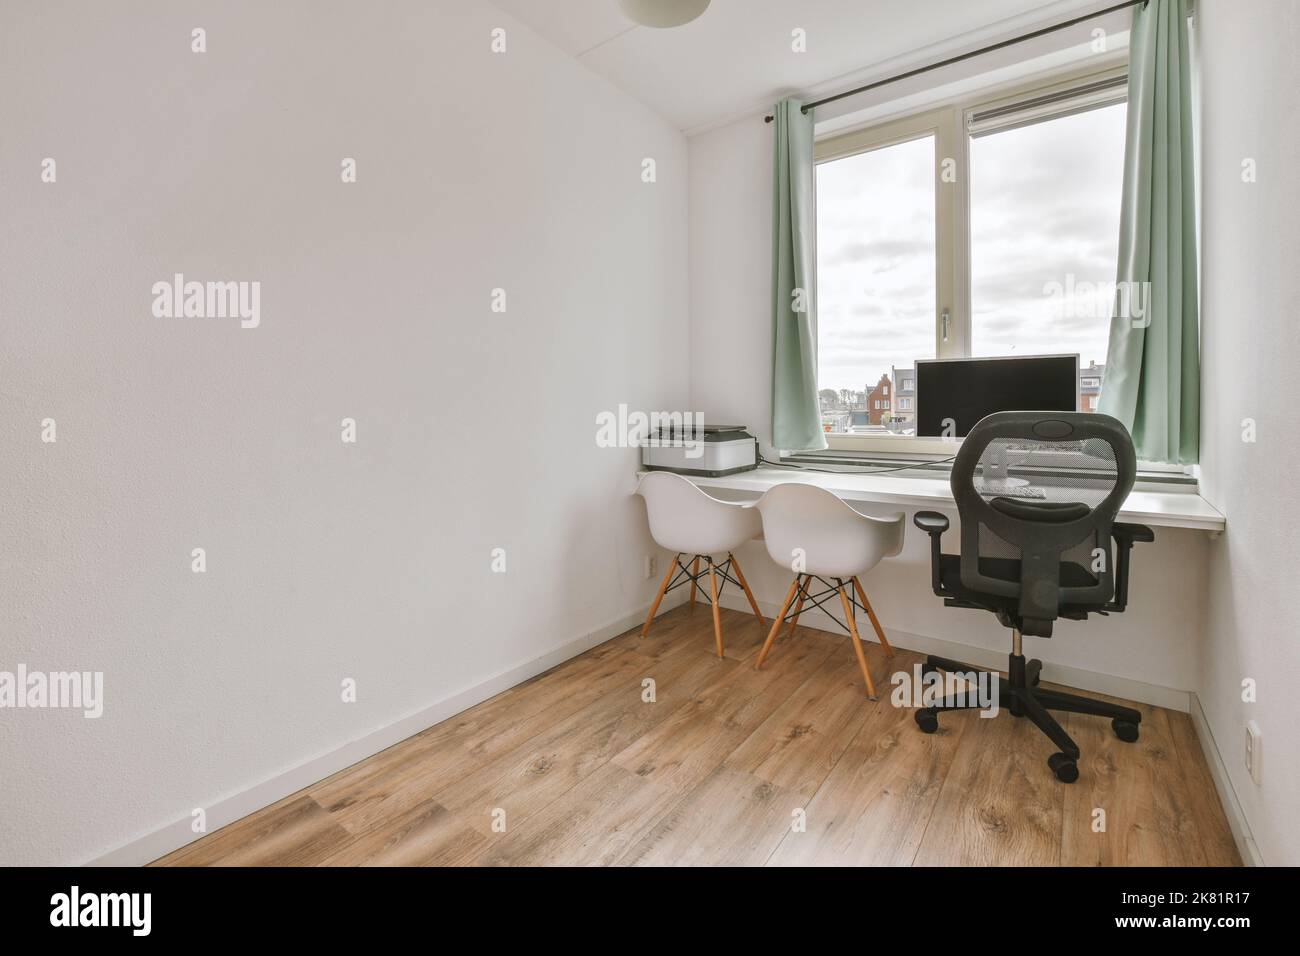 Interni minimalisti della sala studio con pavimento in parquet e pareti bianche arredate con divano e tavolo Foto Stock